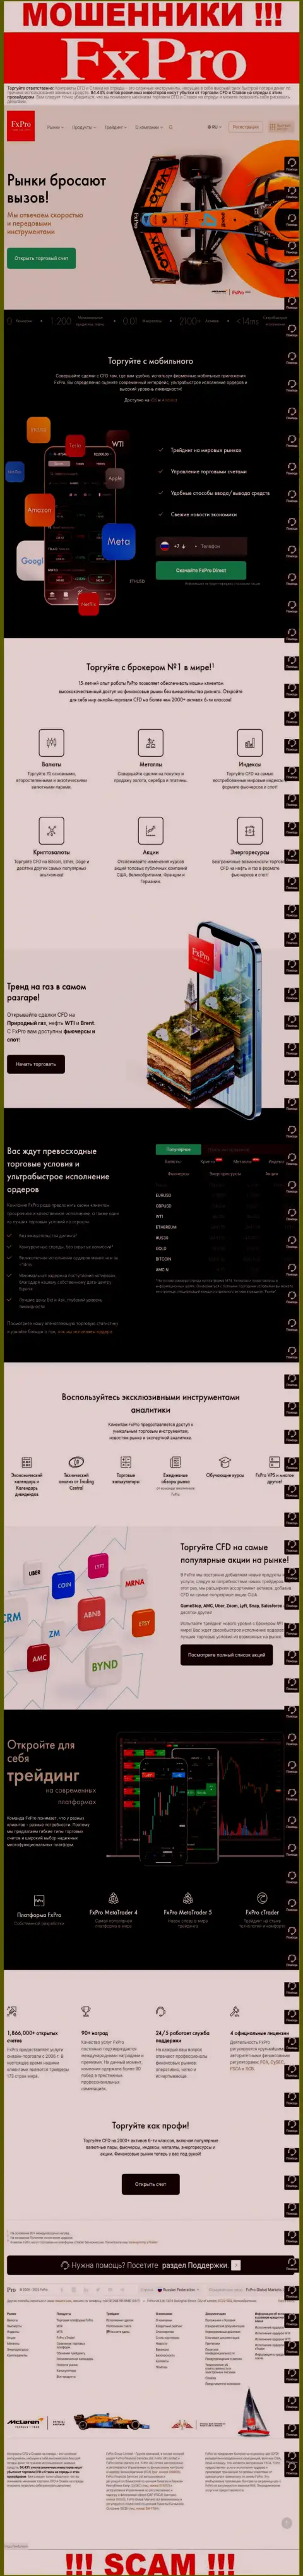 Капкан для лохов - официальный сайт воров FxPro Com Ru